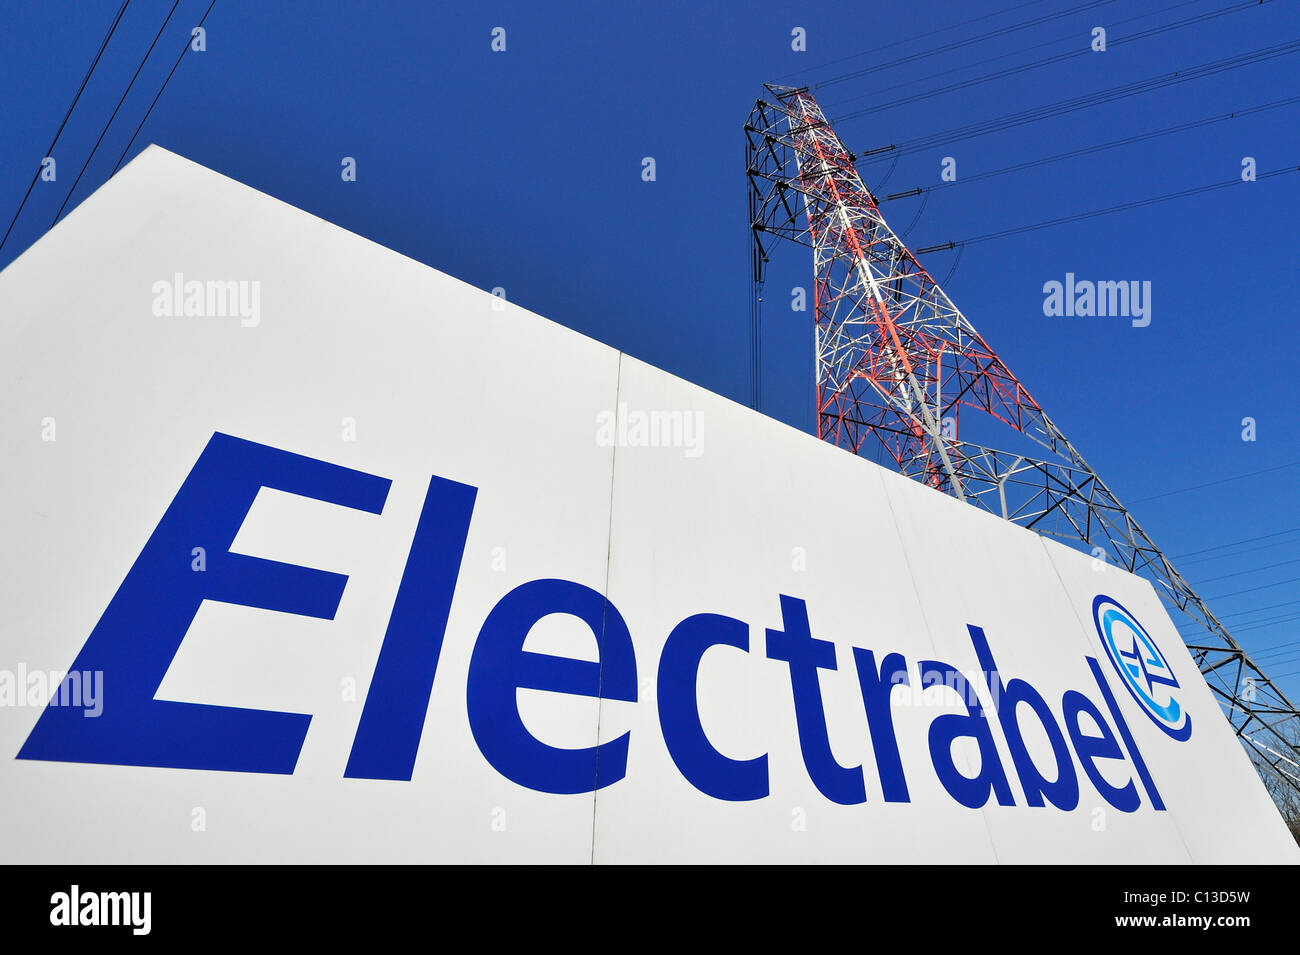 Energia elettrica ad alta tensione pilone e firmare con il logo di energy corporation Electrabel, Gand, Belgio Foto Stock